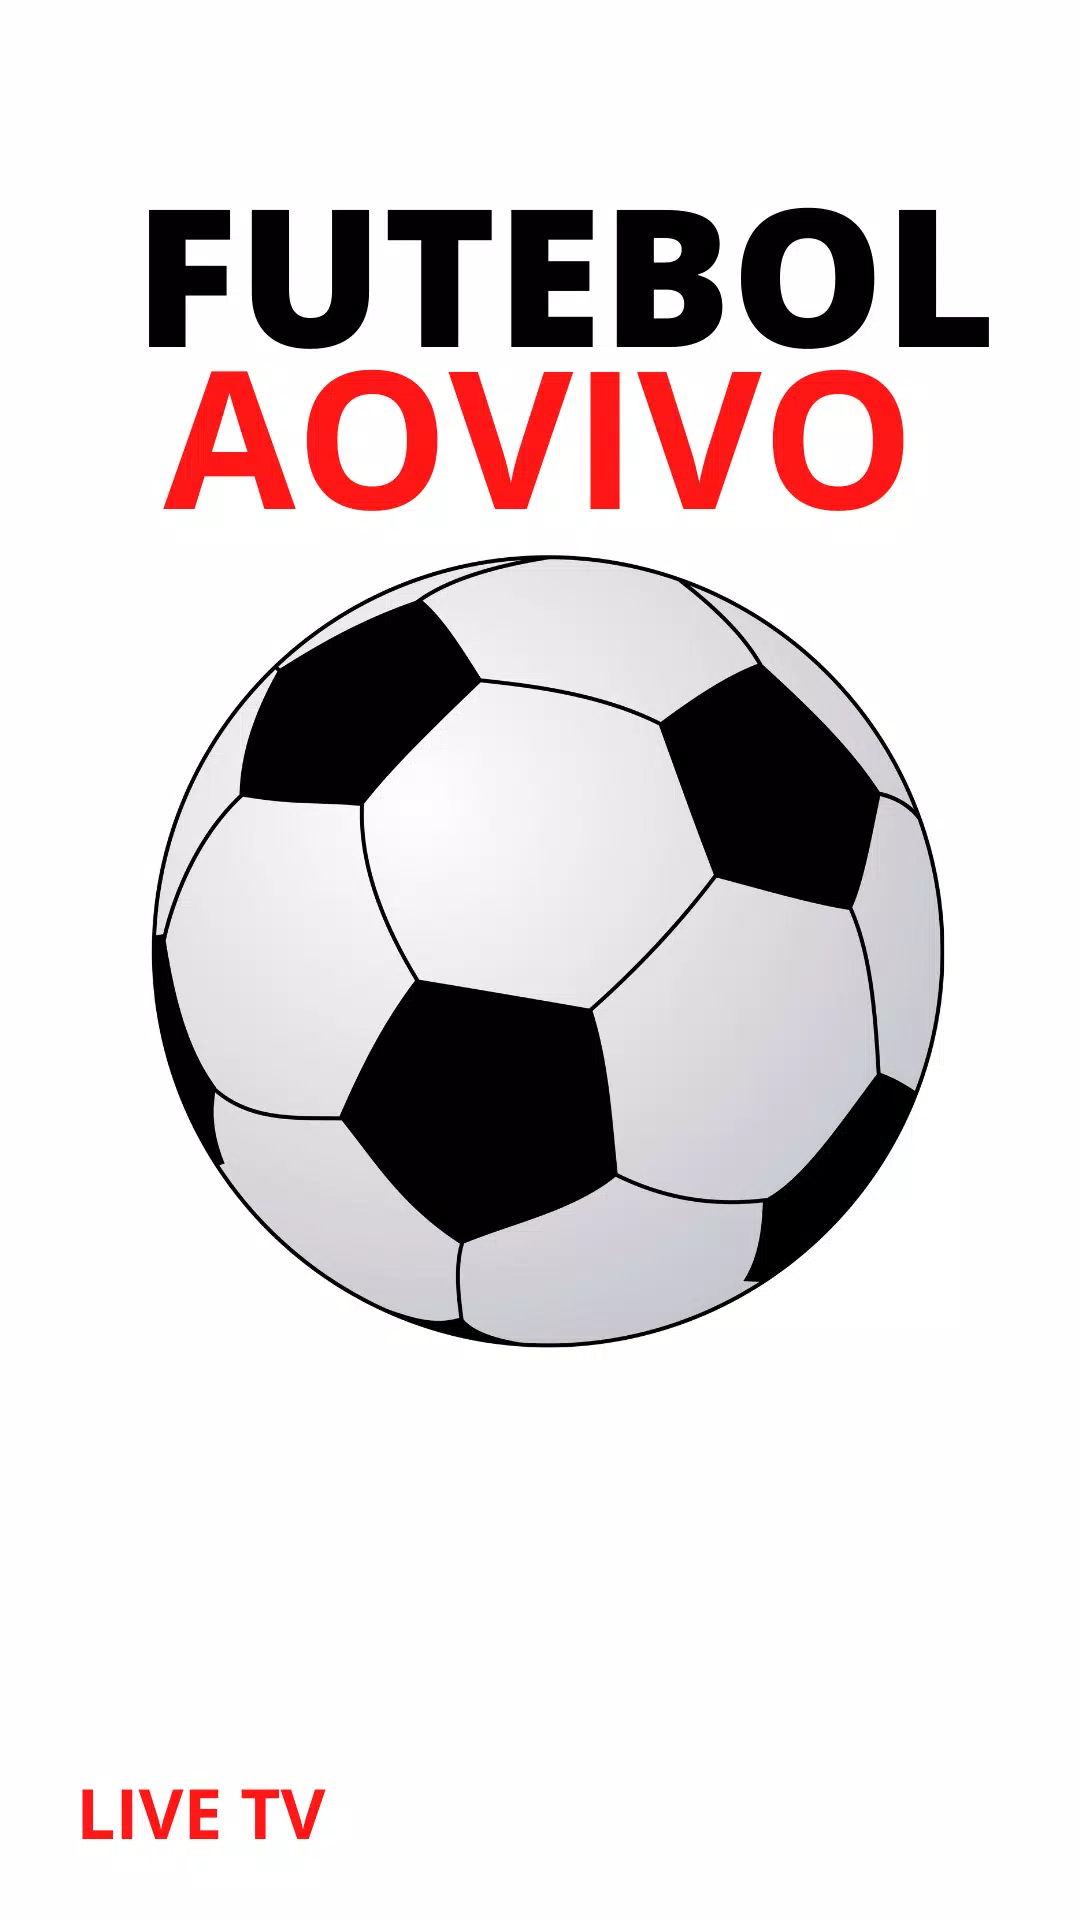 Assistir Futebol ao Vivo - Fut APK (Download Grátis) - Android